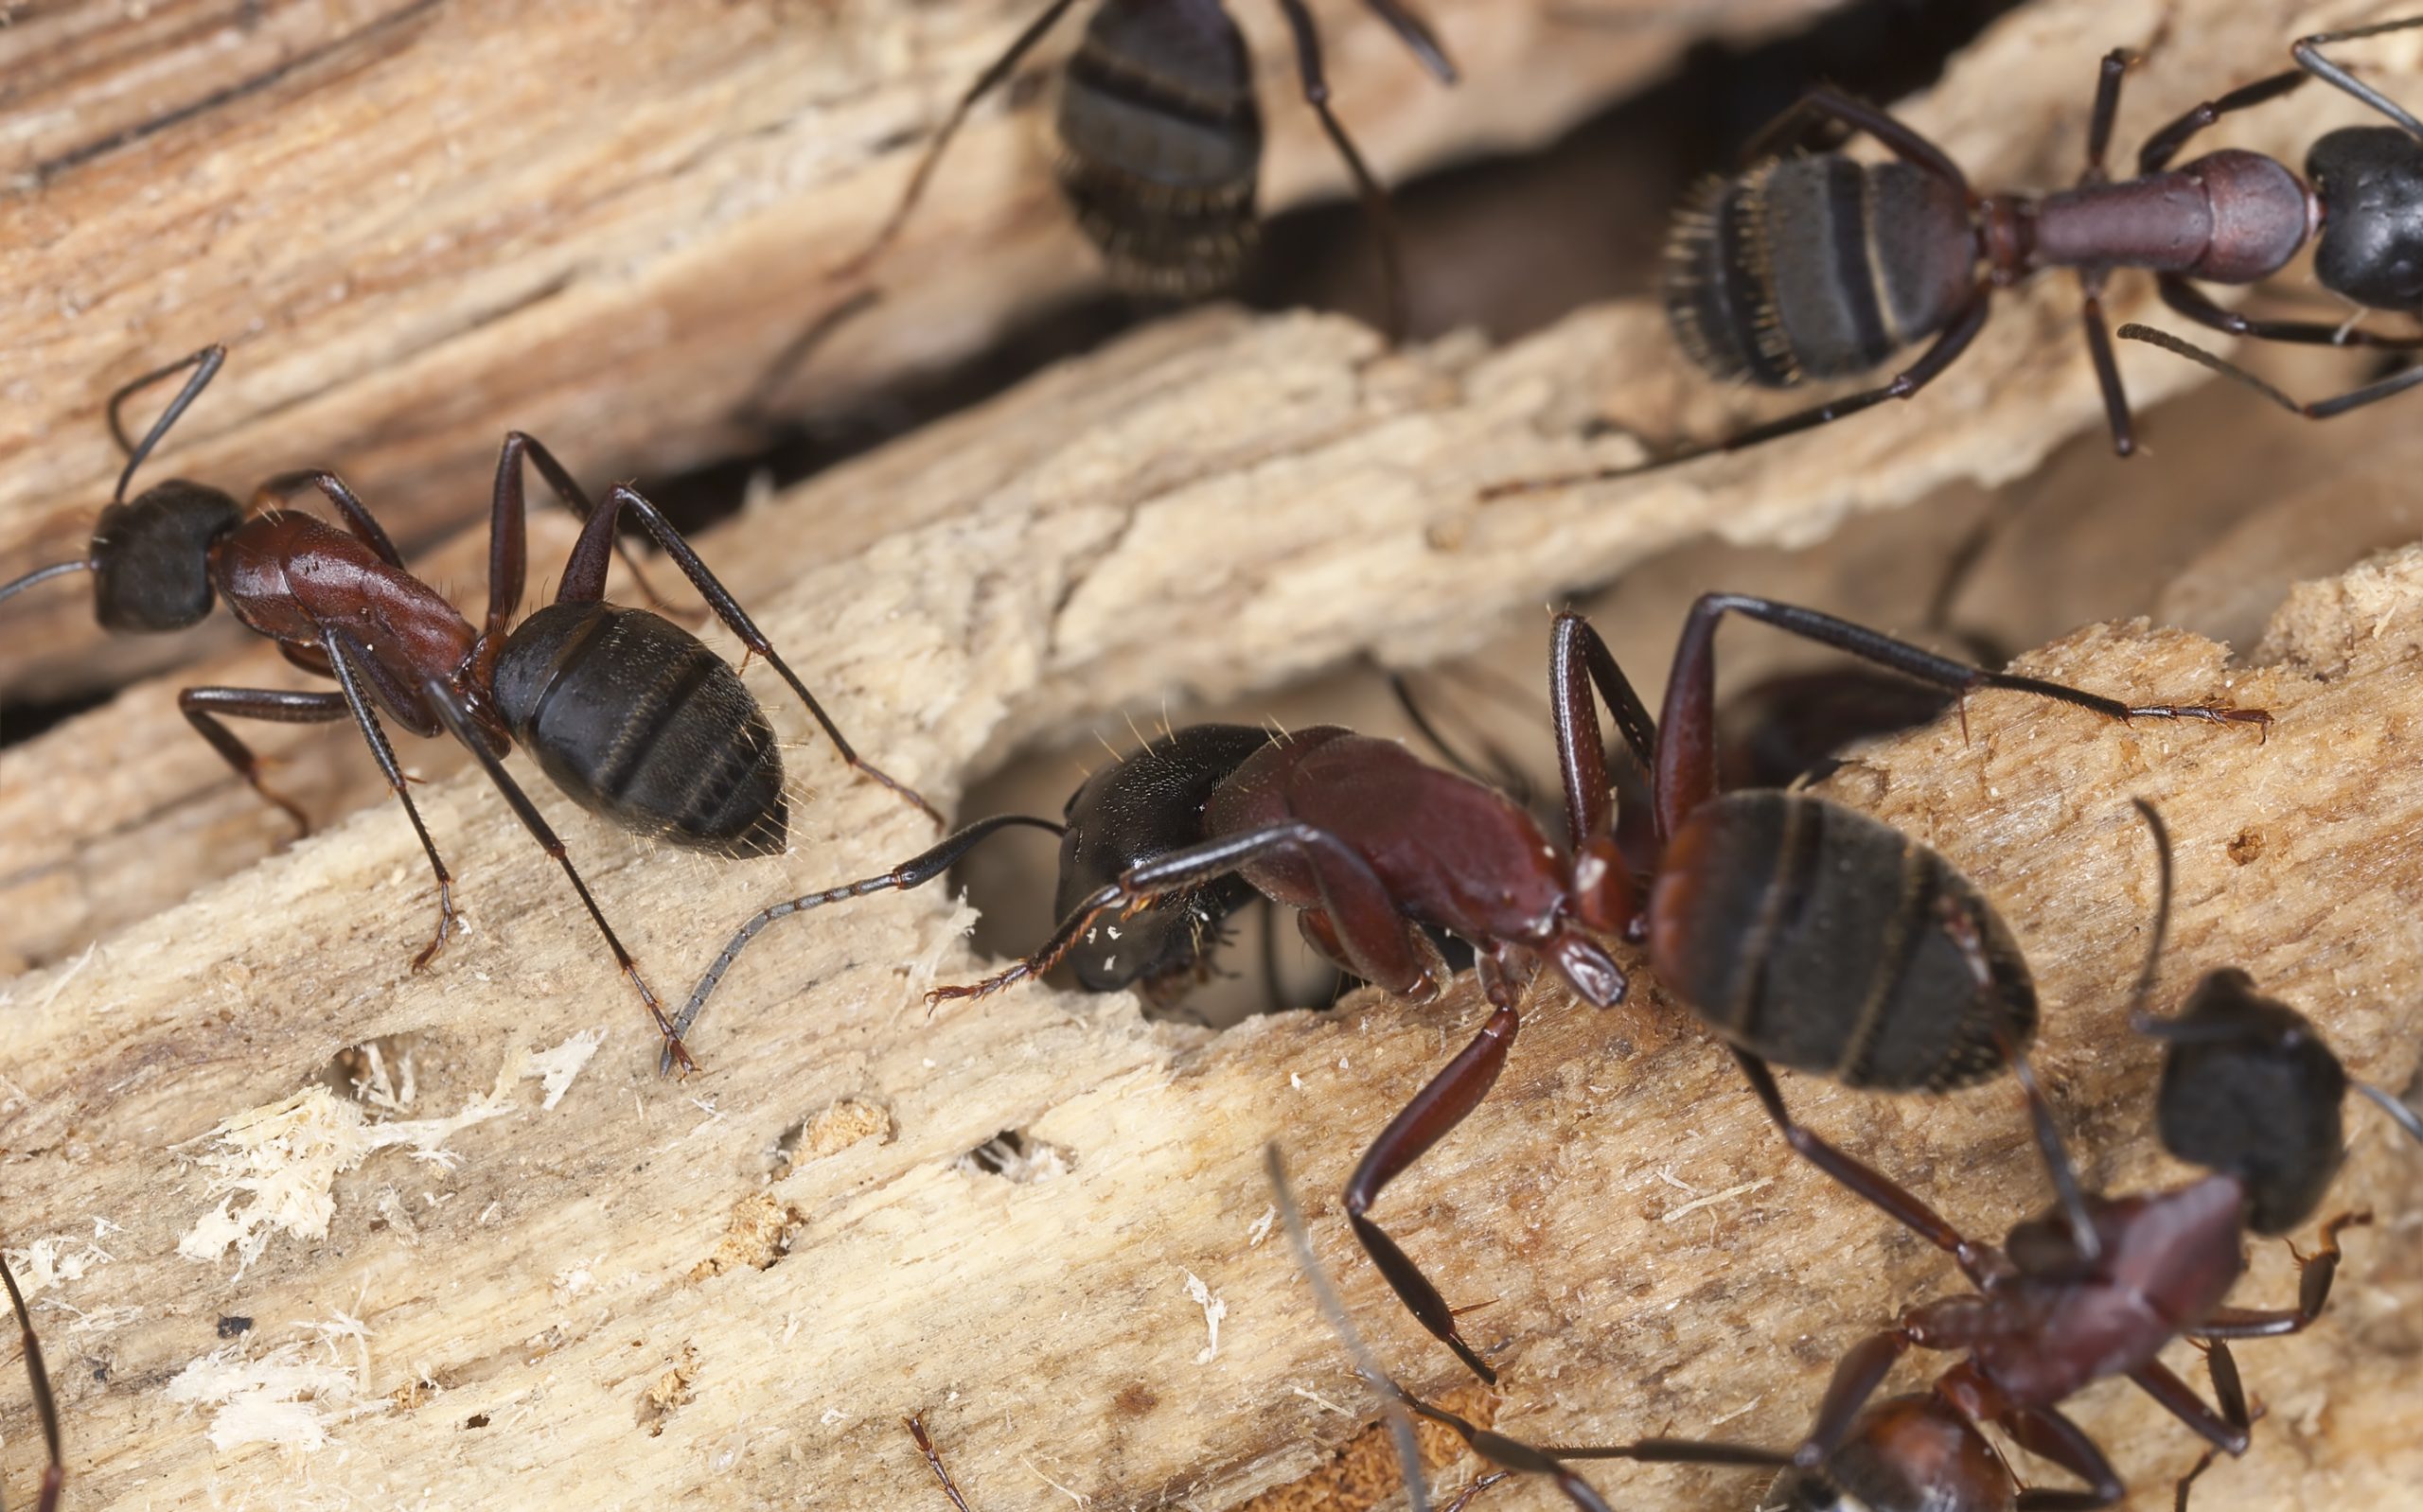 Carpenter ants, Camponotus herculeanus crawling on wood